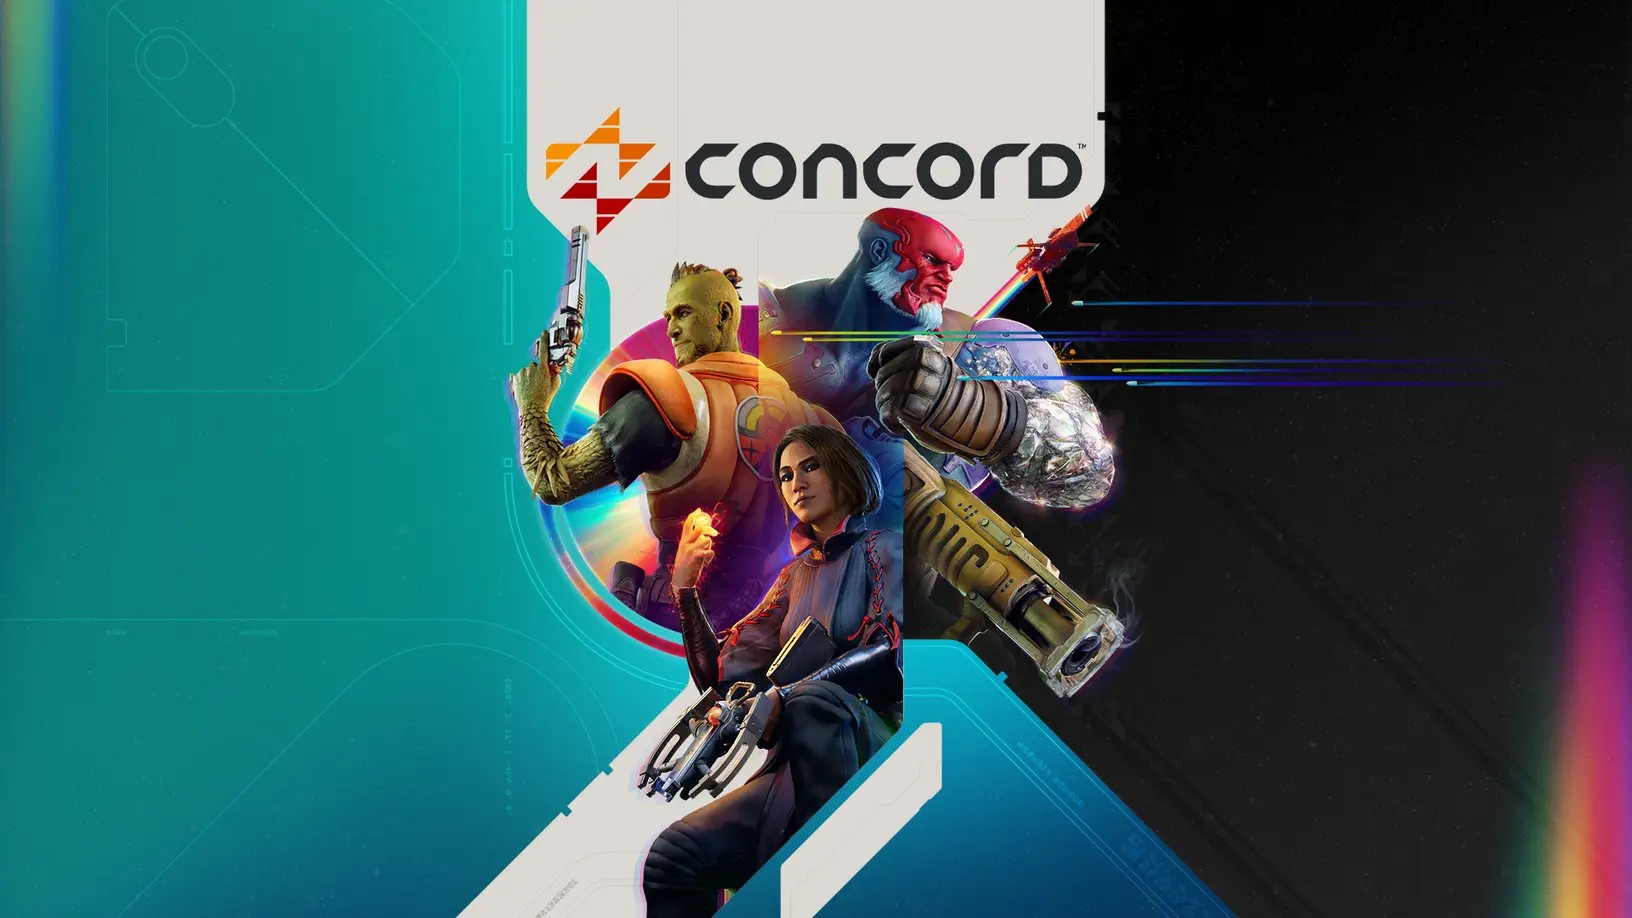 索尼英雄射击游戏《Concord》不是免费游戏 需要购买